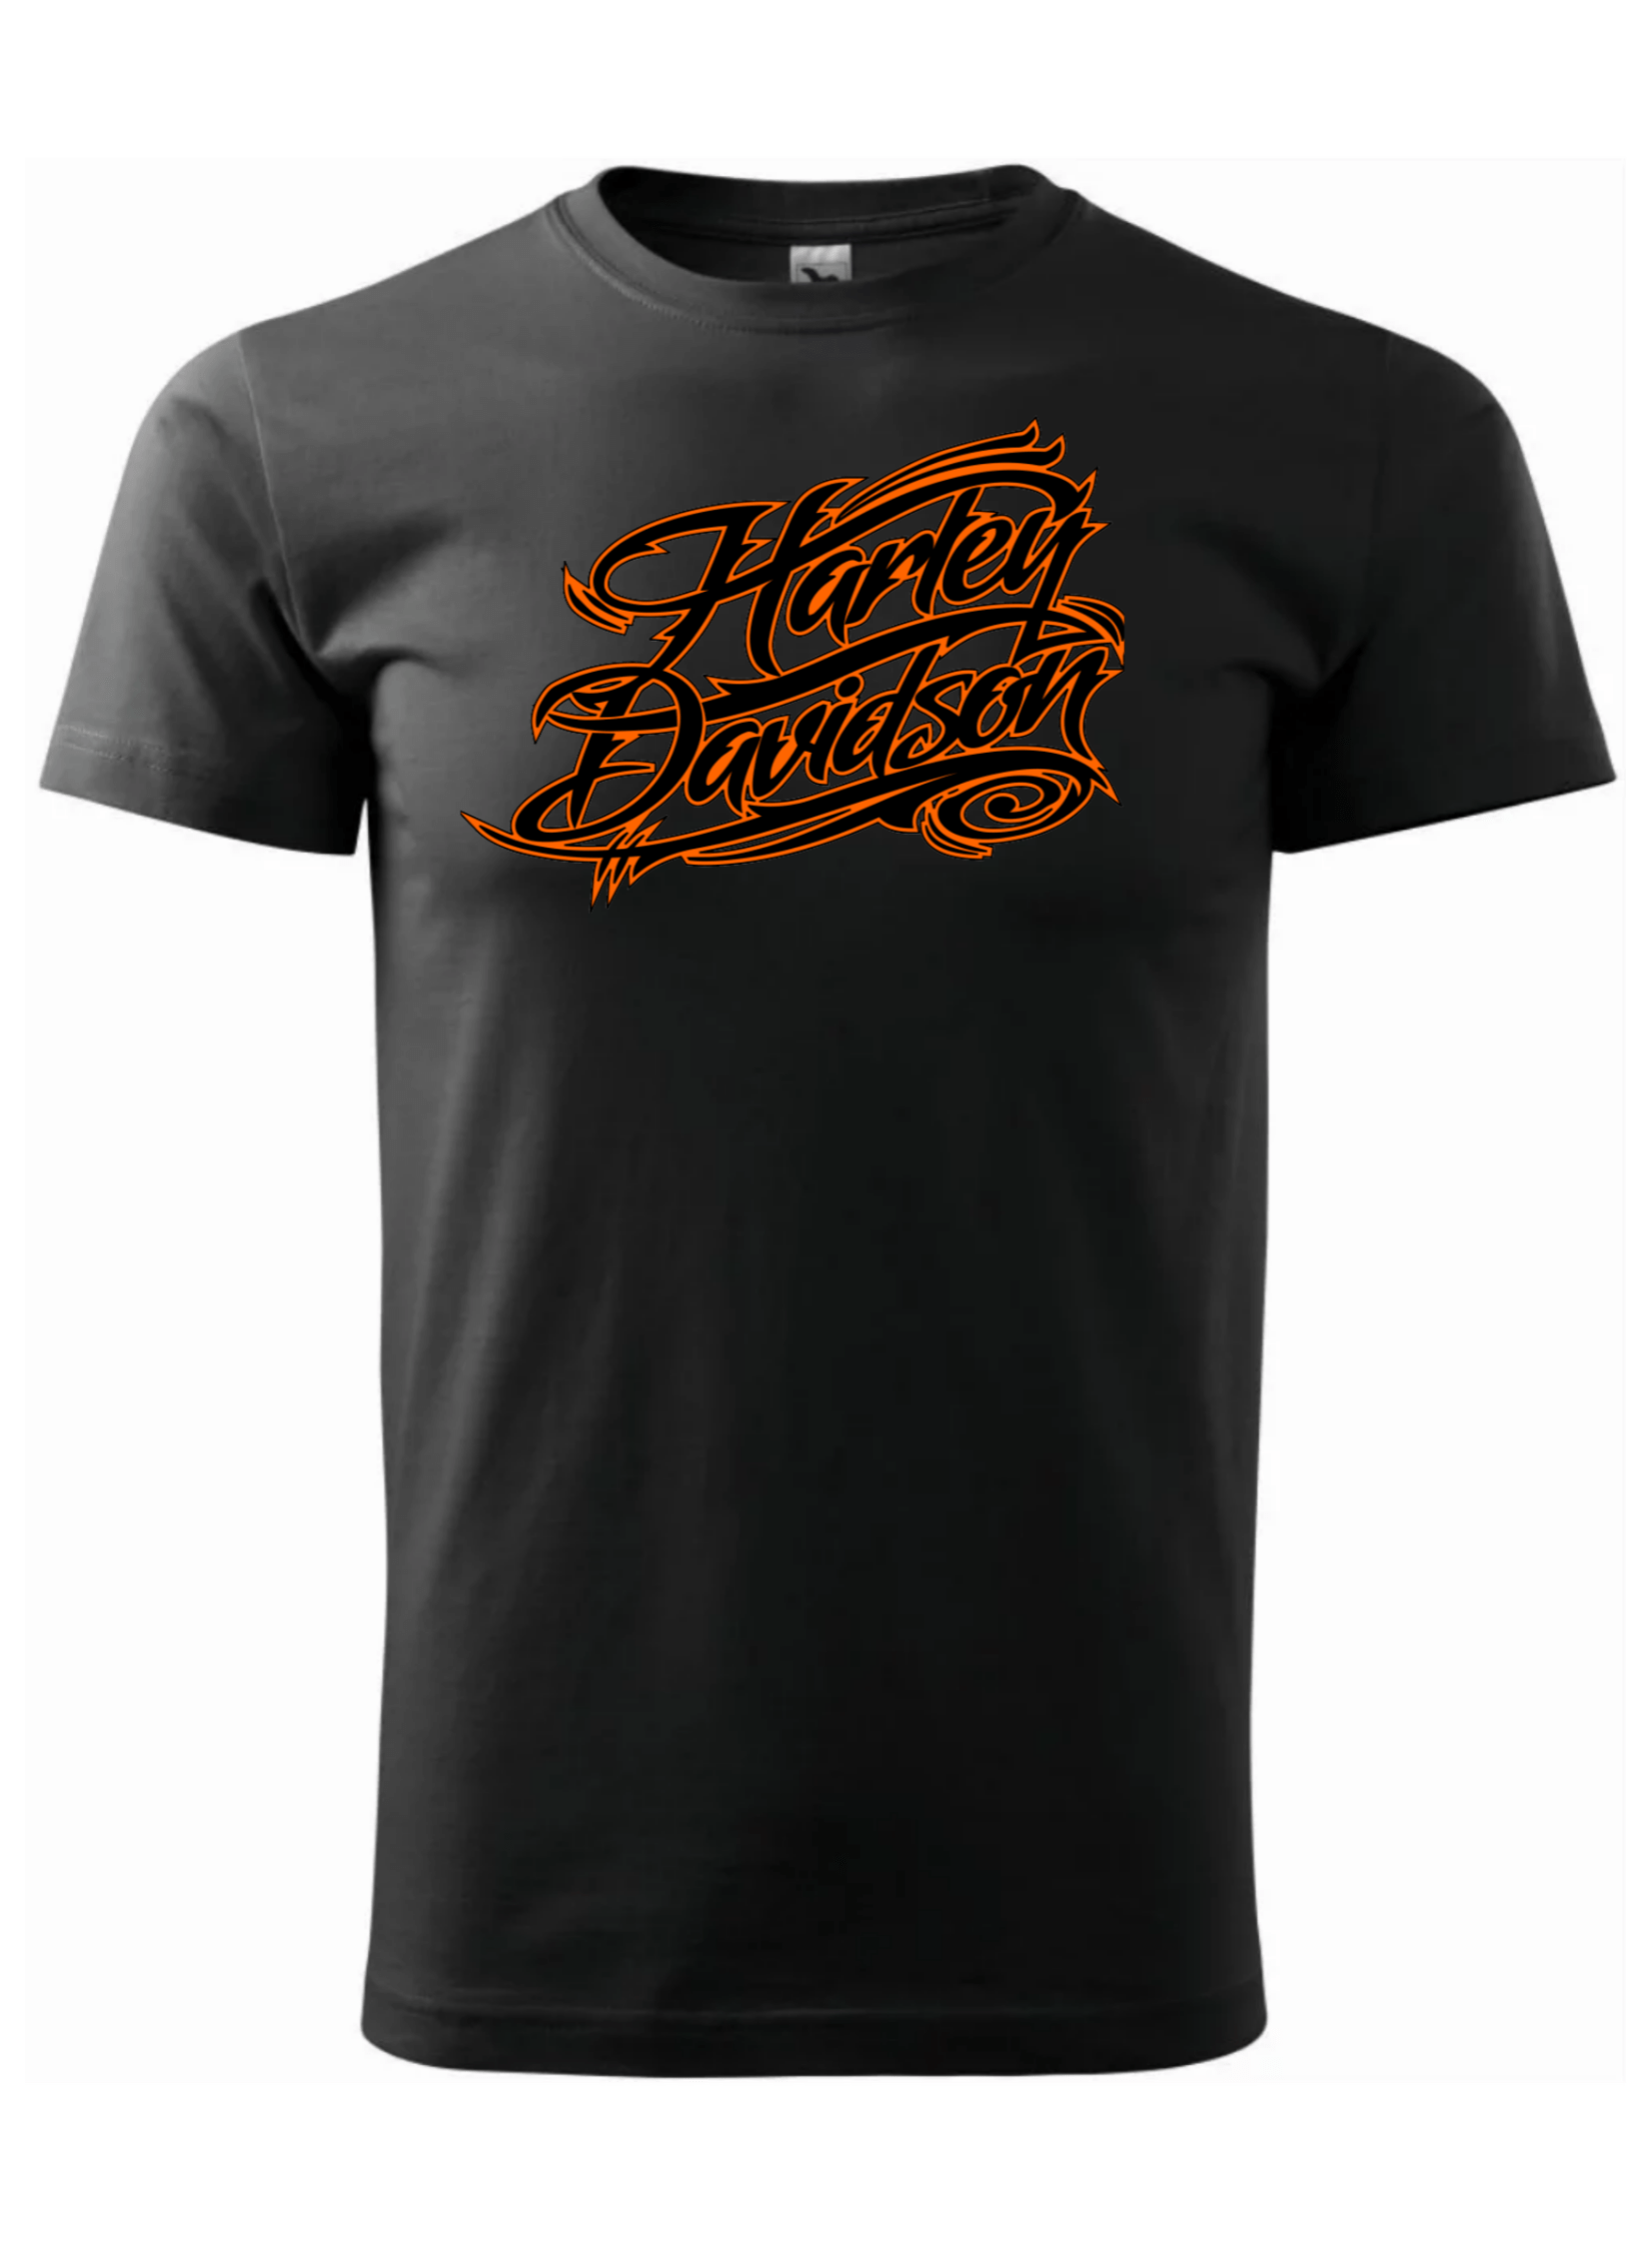 Pánské tričko s potiskem značky Harley Davidson 20